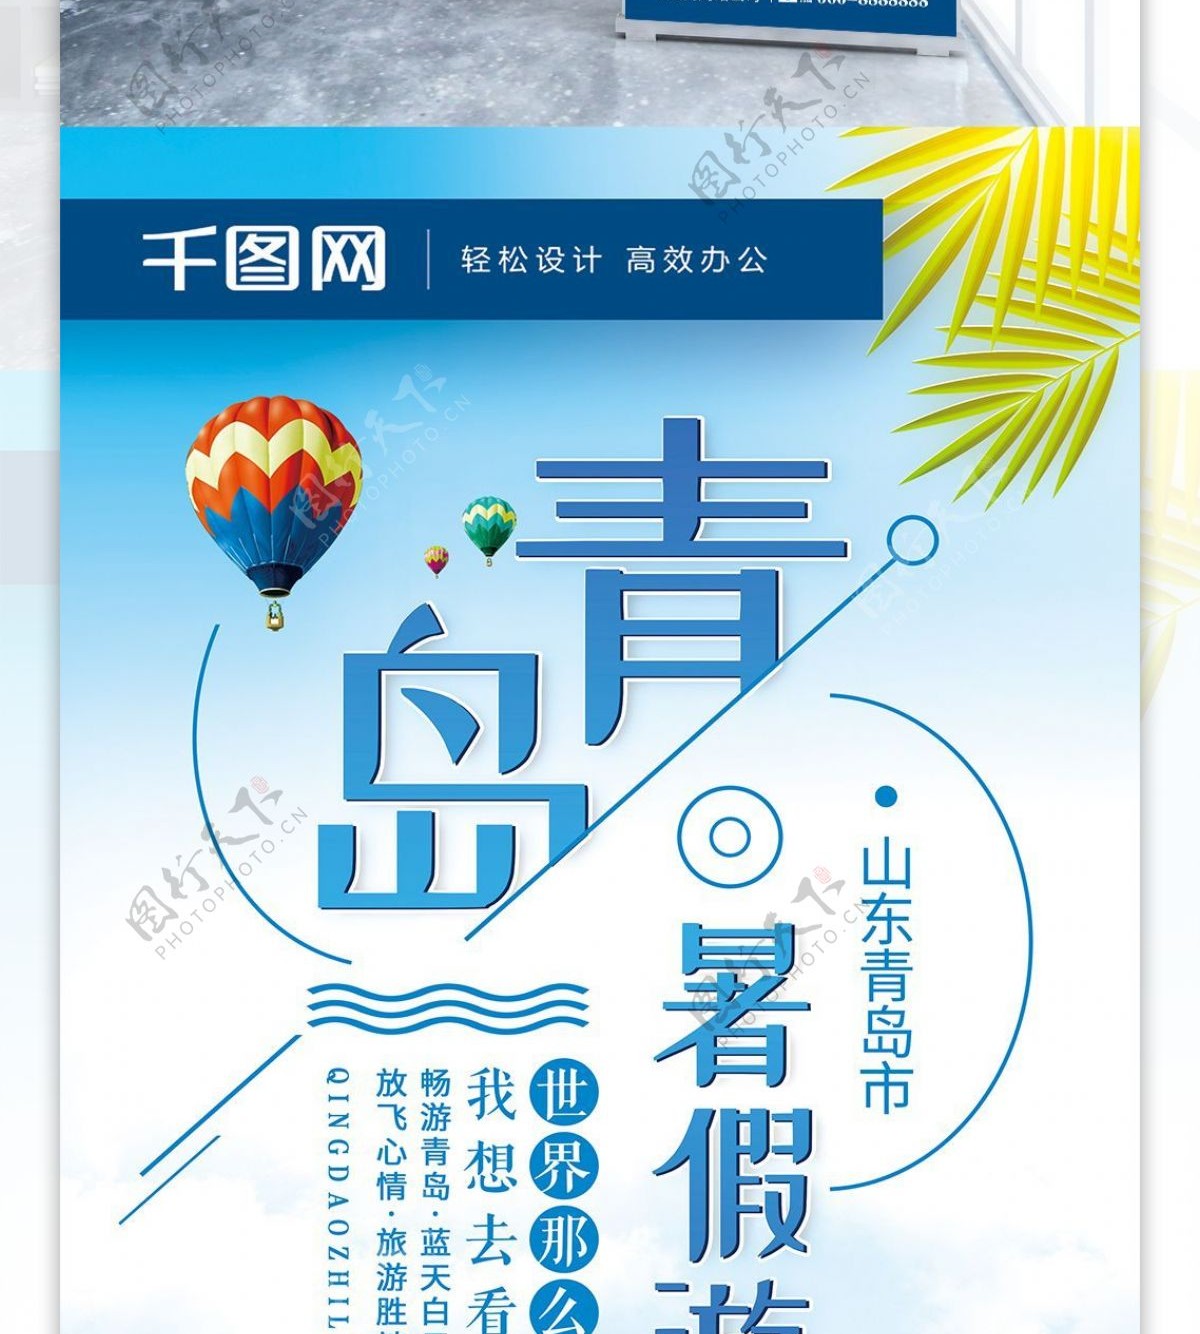 创意排版青岛旅游青岛暑假游旅行社宣传展架